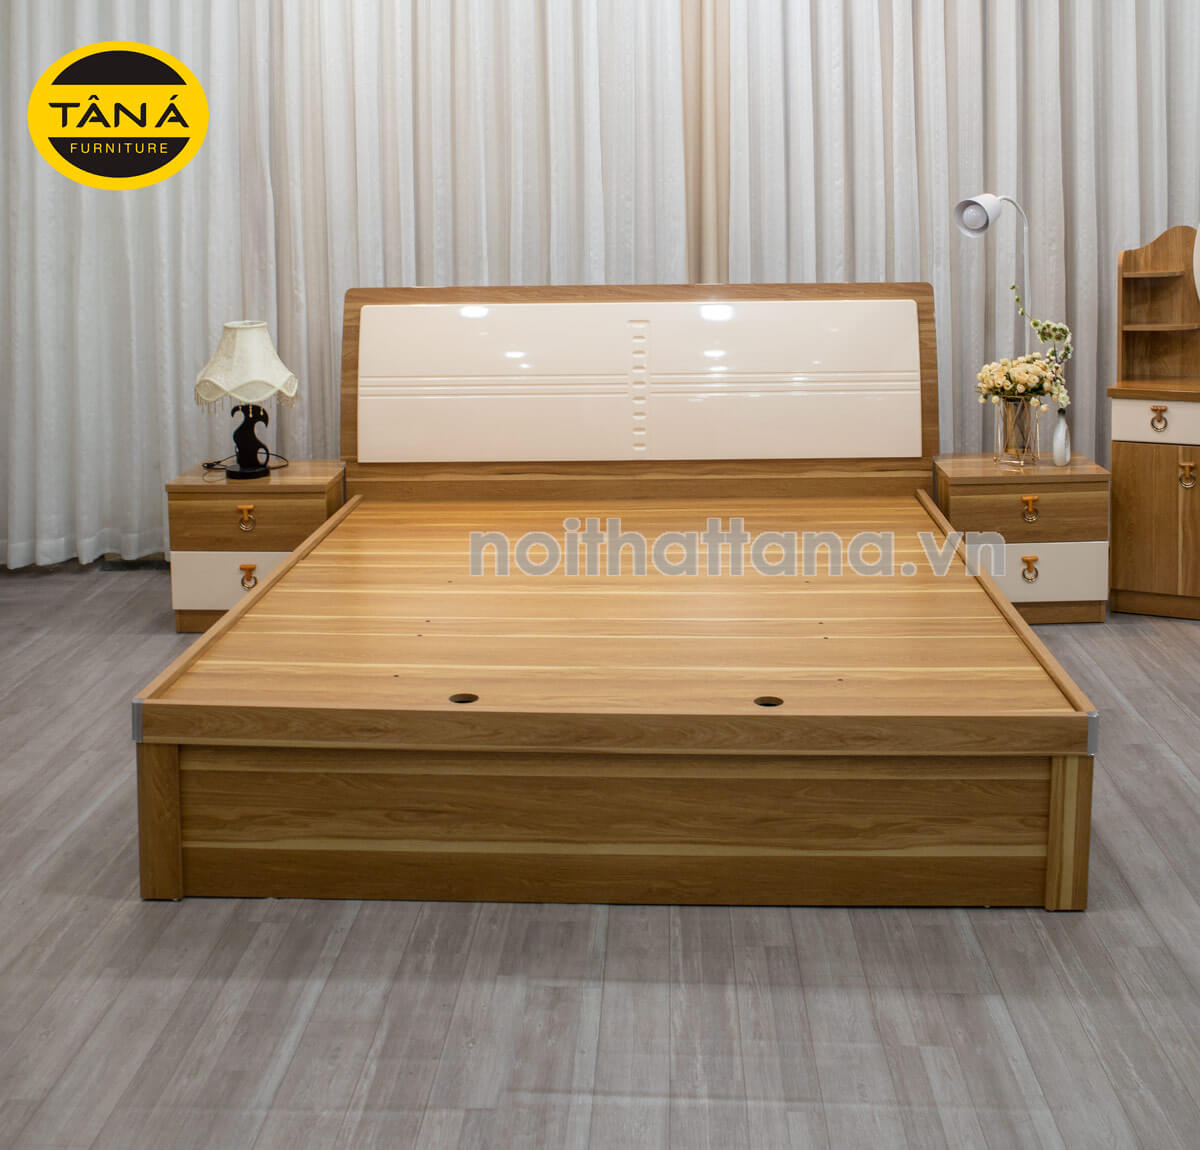 Mẫu giường ngủ gỗ mdf đẹp hiện đại tại bình dương